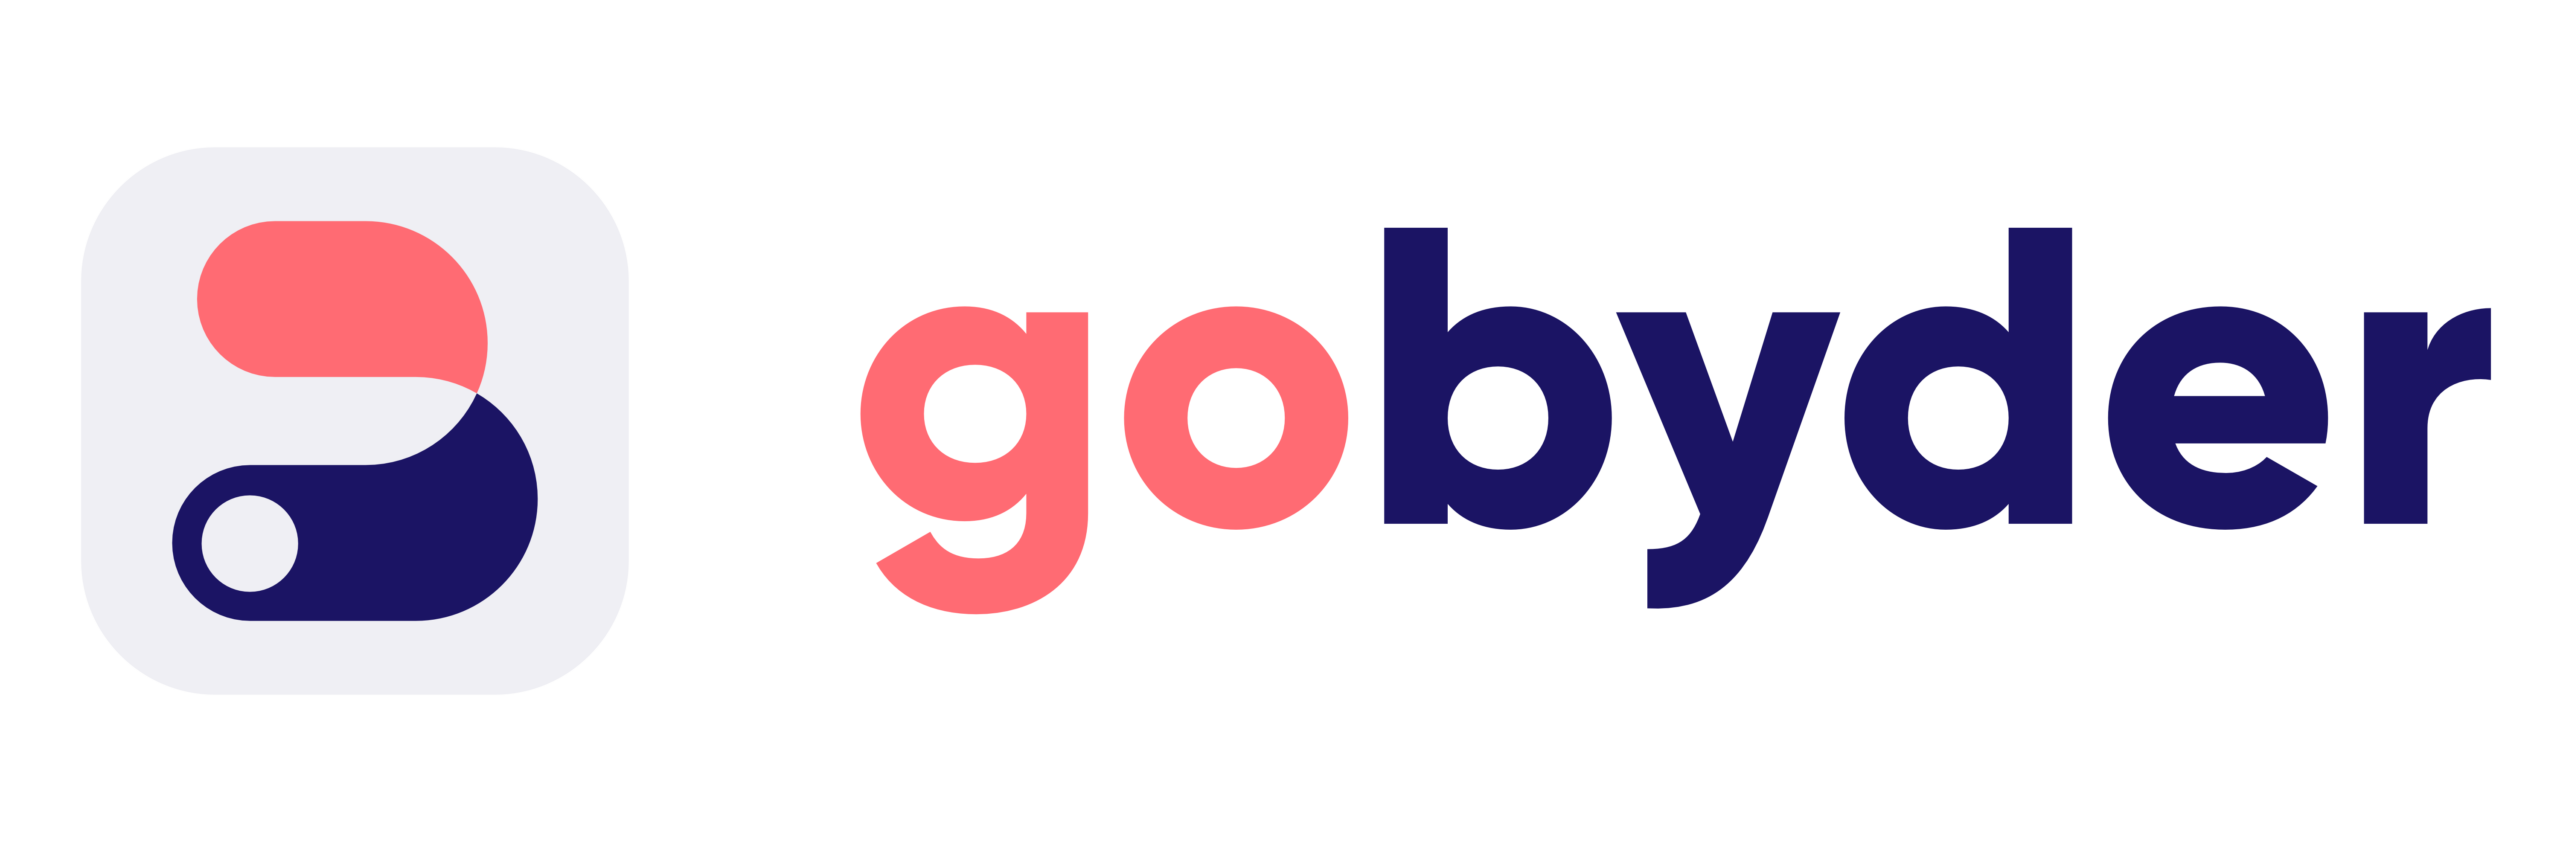 gobyder Logo